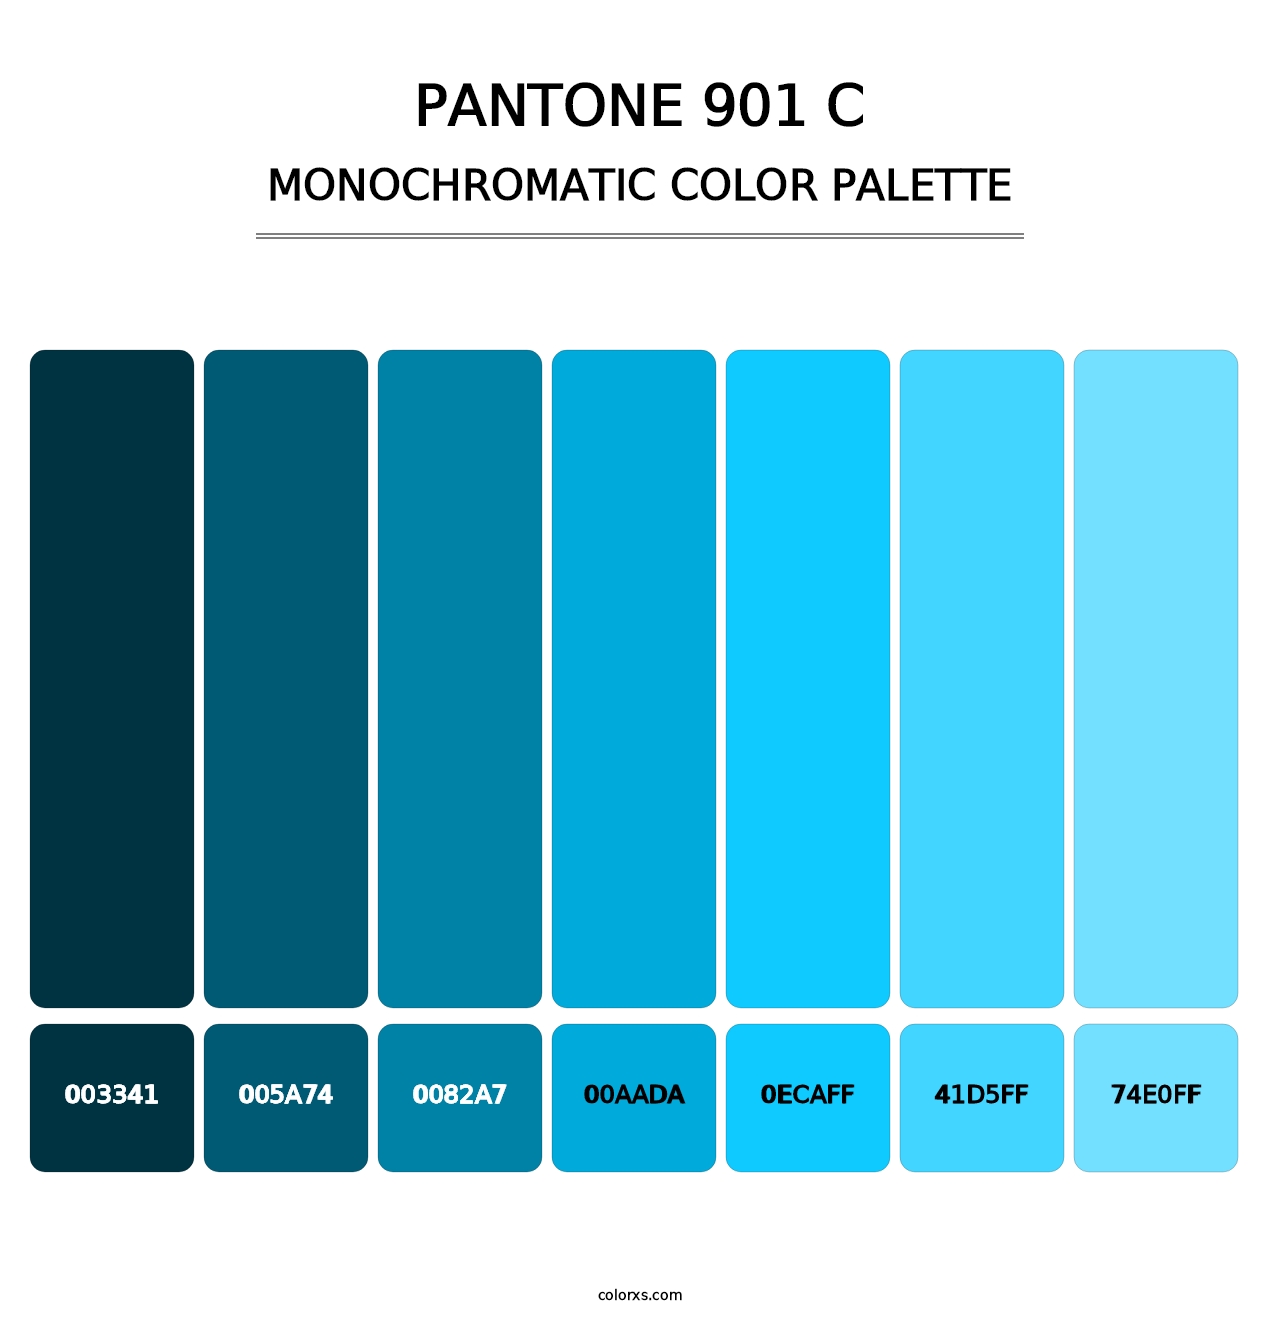 PANTONE 901 C - Monochromatic Color Palette